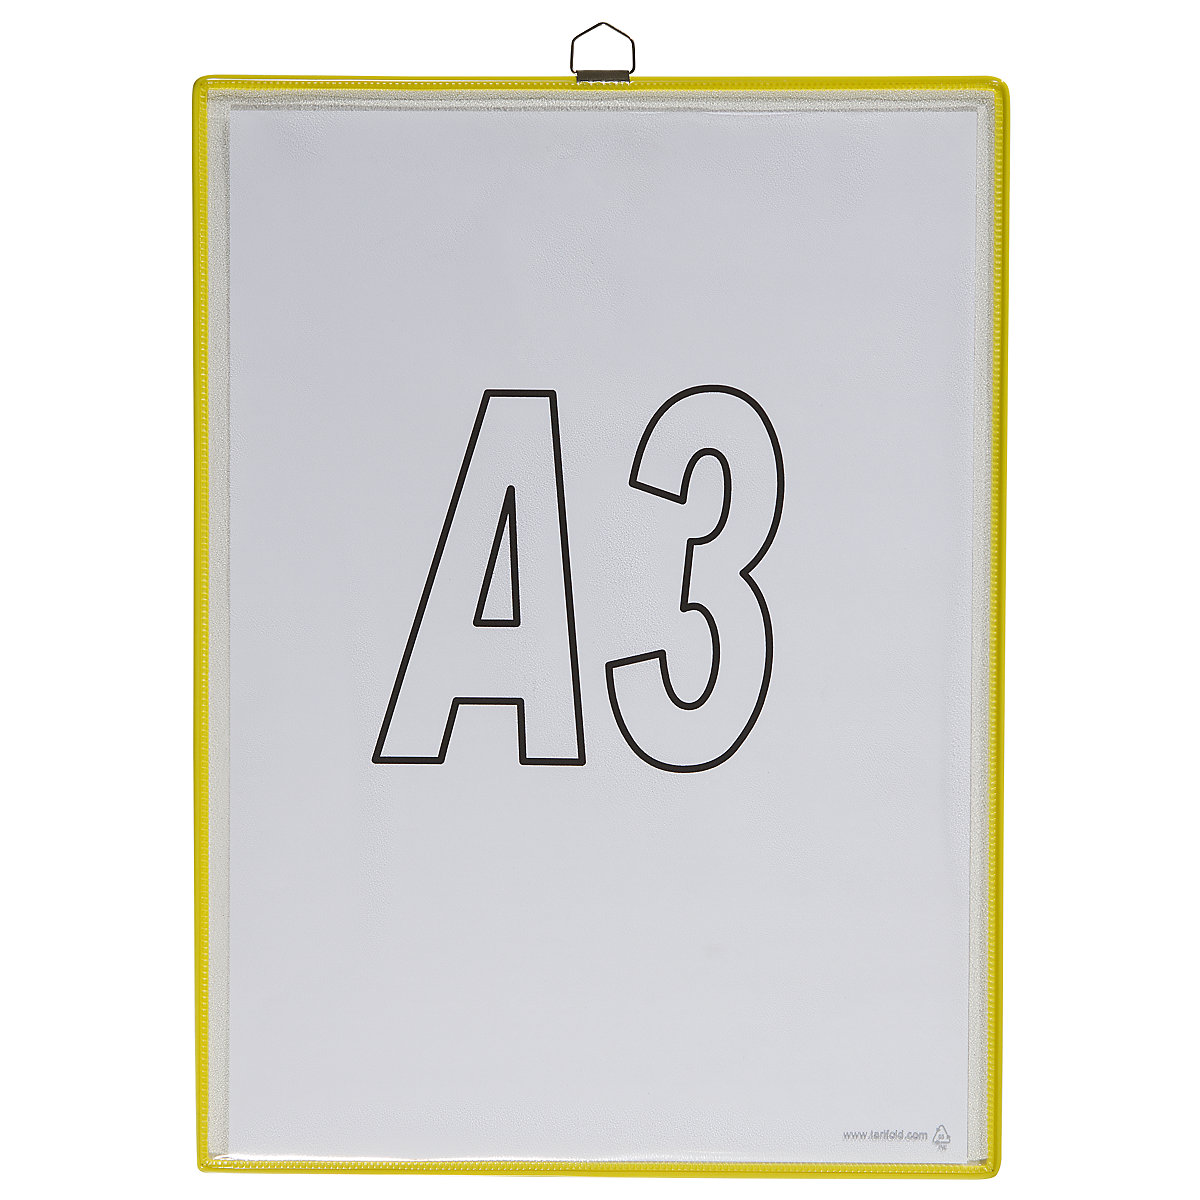 Pochette transparente à accrocher – Tarifold, pour format A3, coloris jaune, lot de 10-5